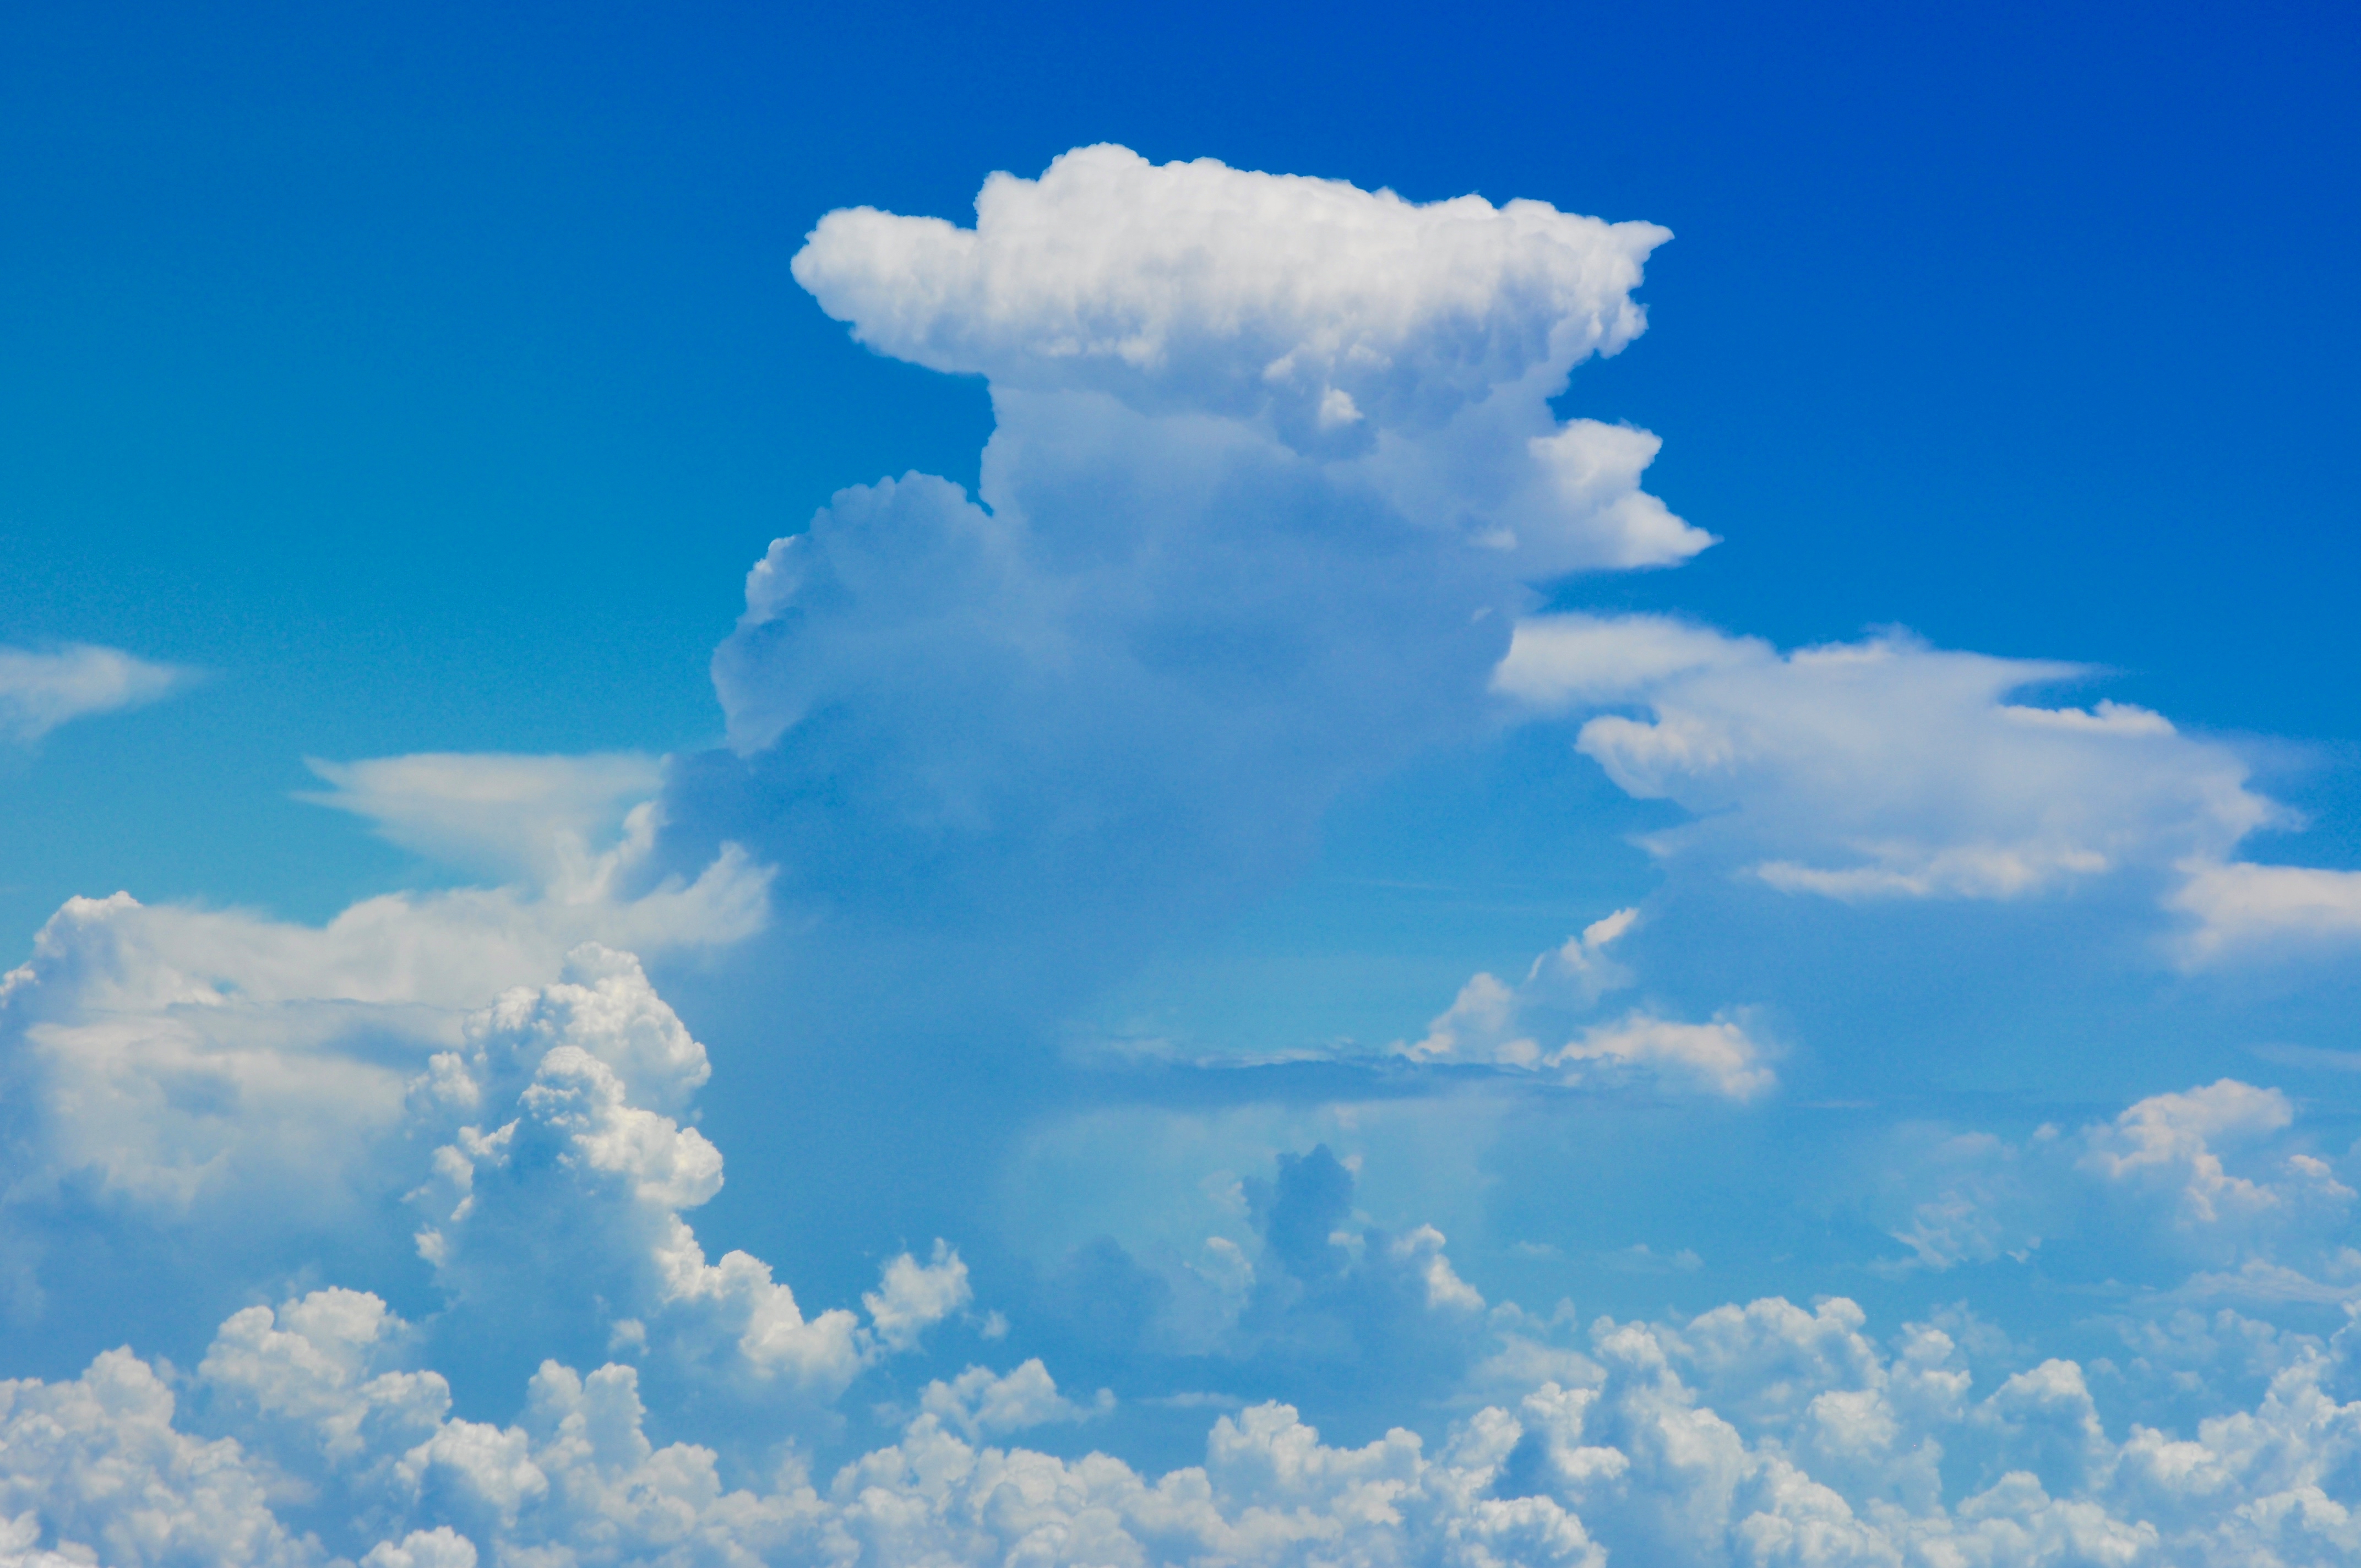 Cumulonuimbus clouds